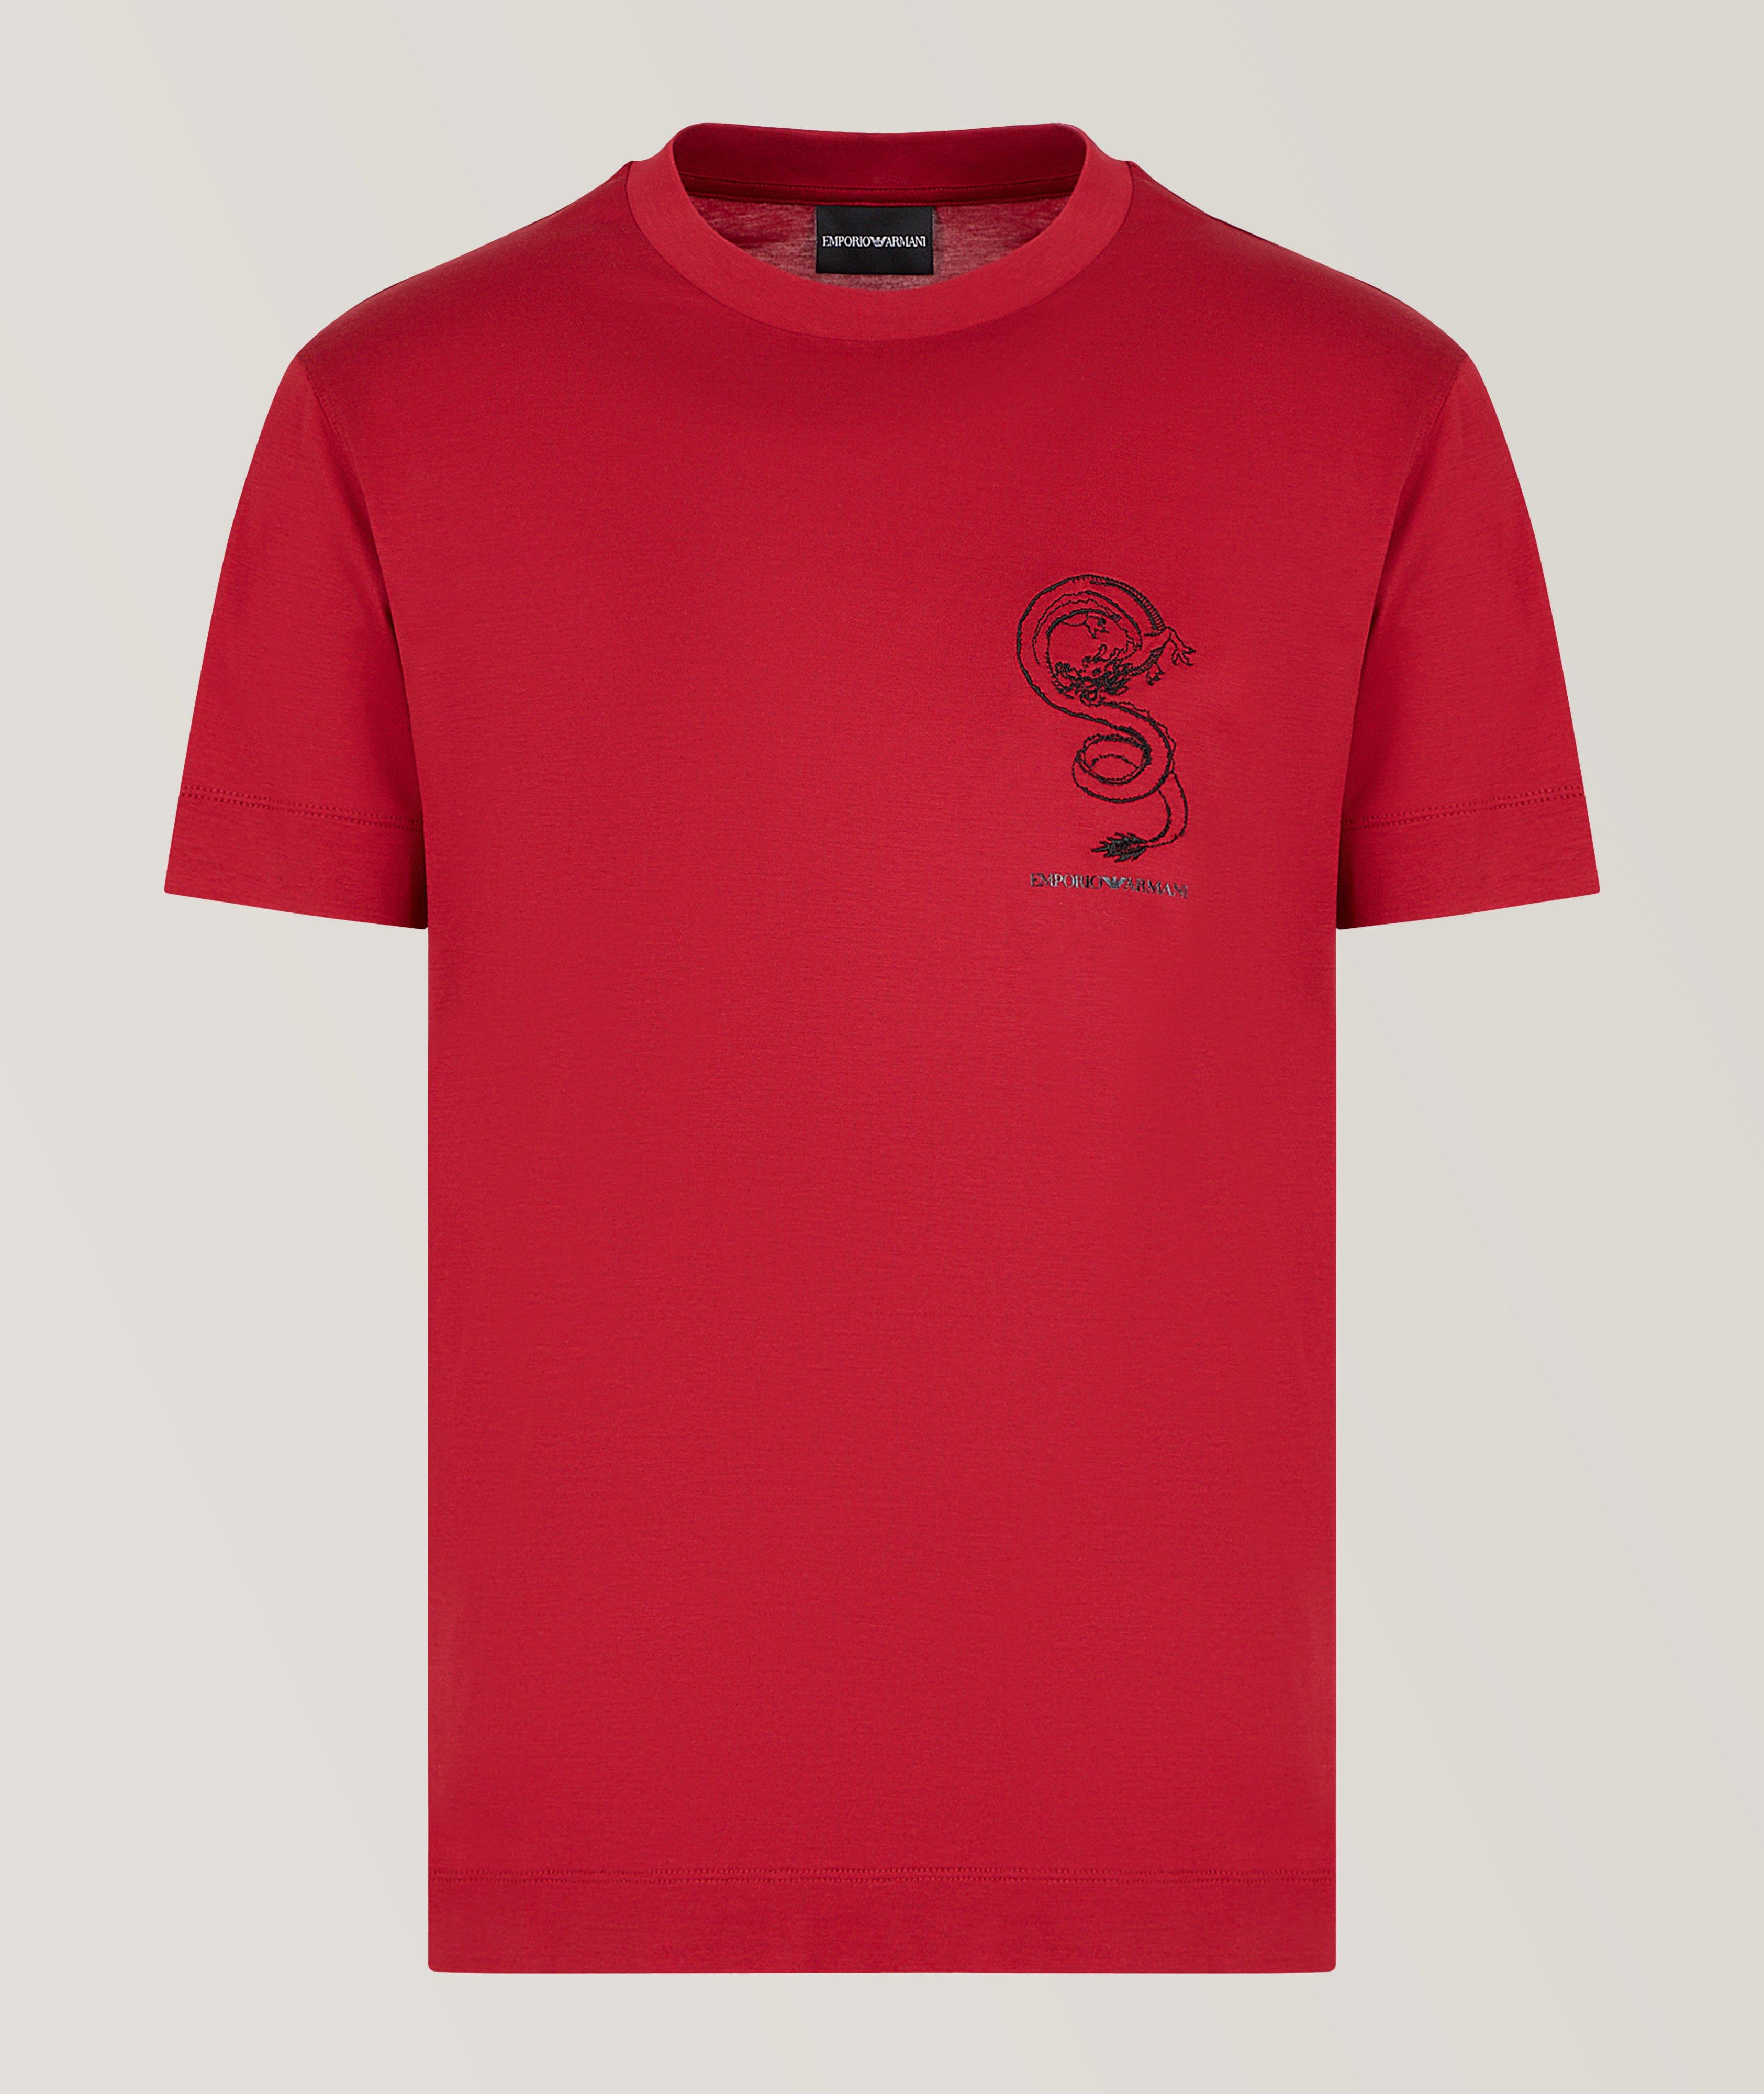 T-shirt en lyocell et en coton, collection du Nouvel An lunaire image 0